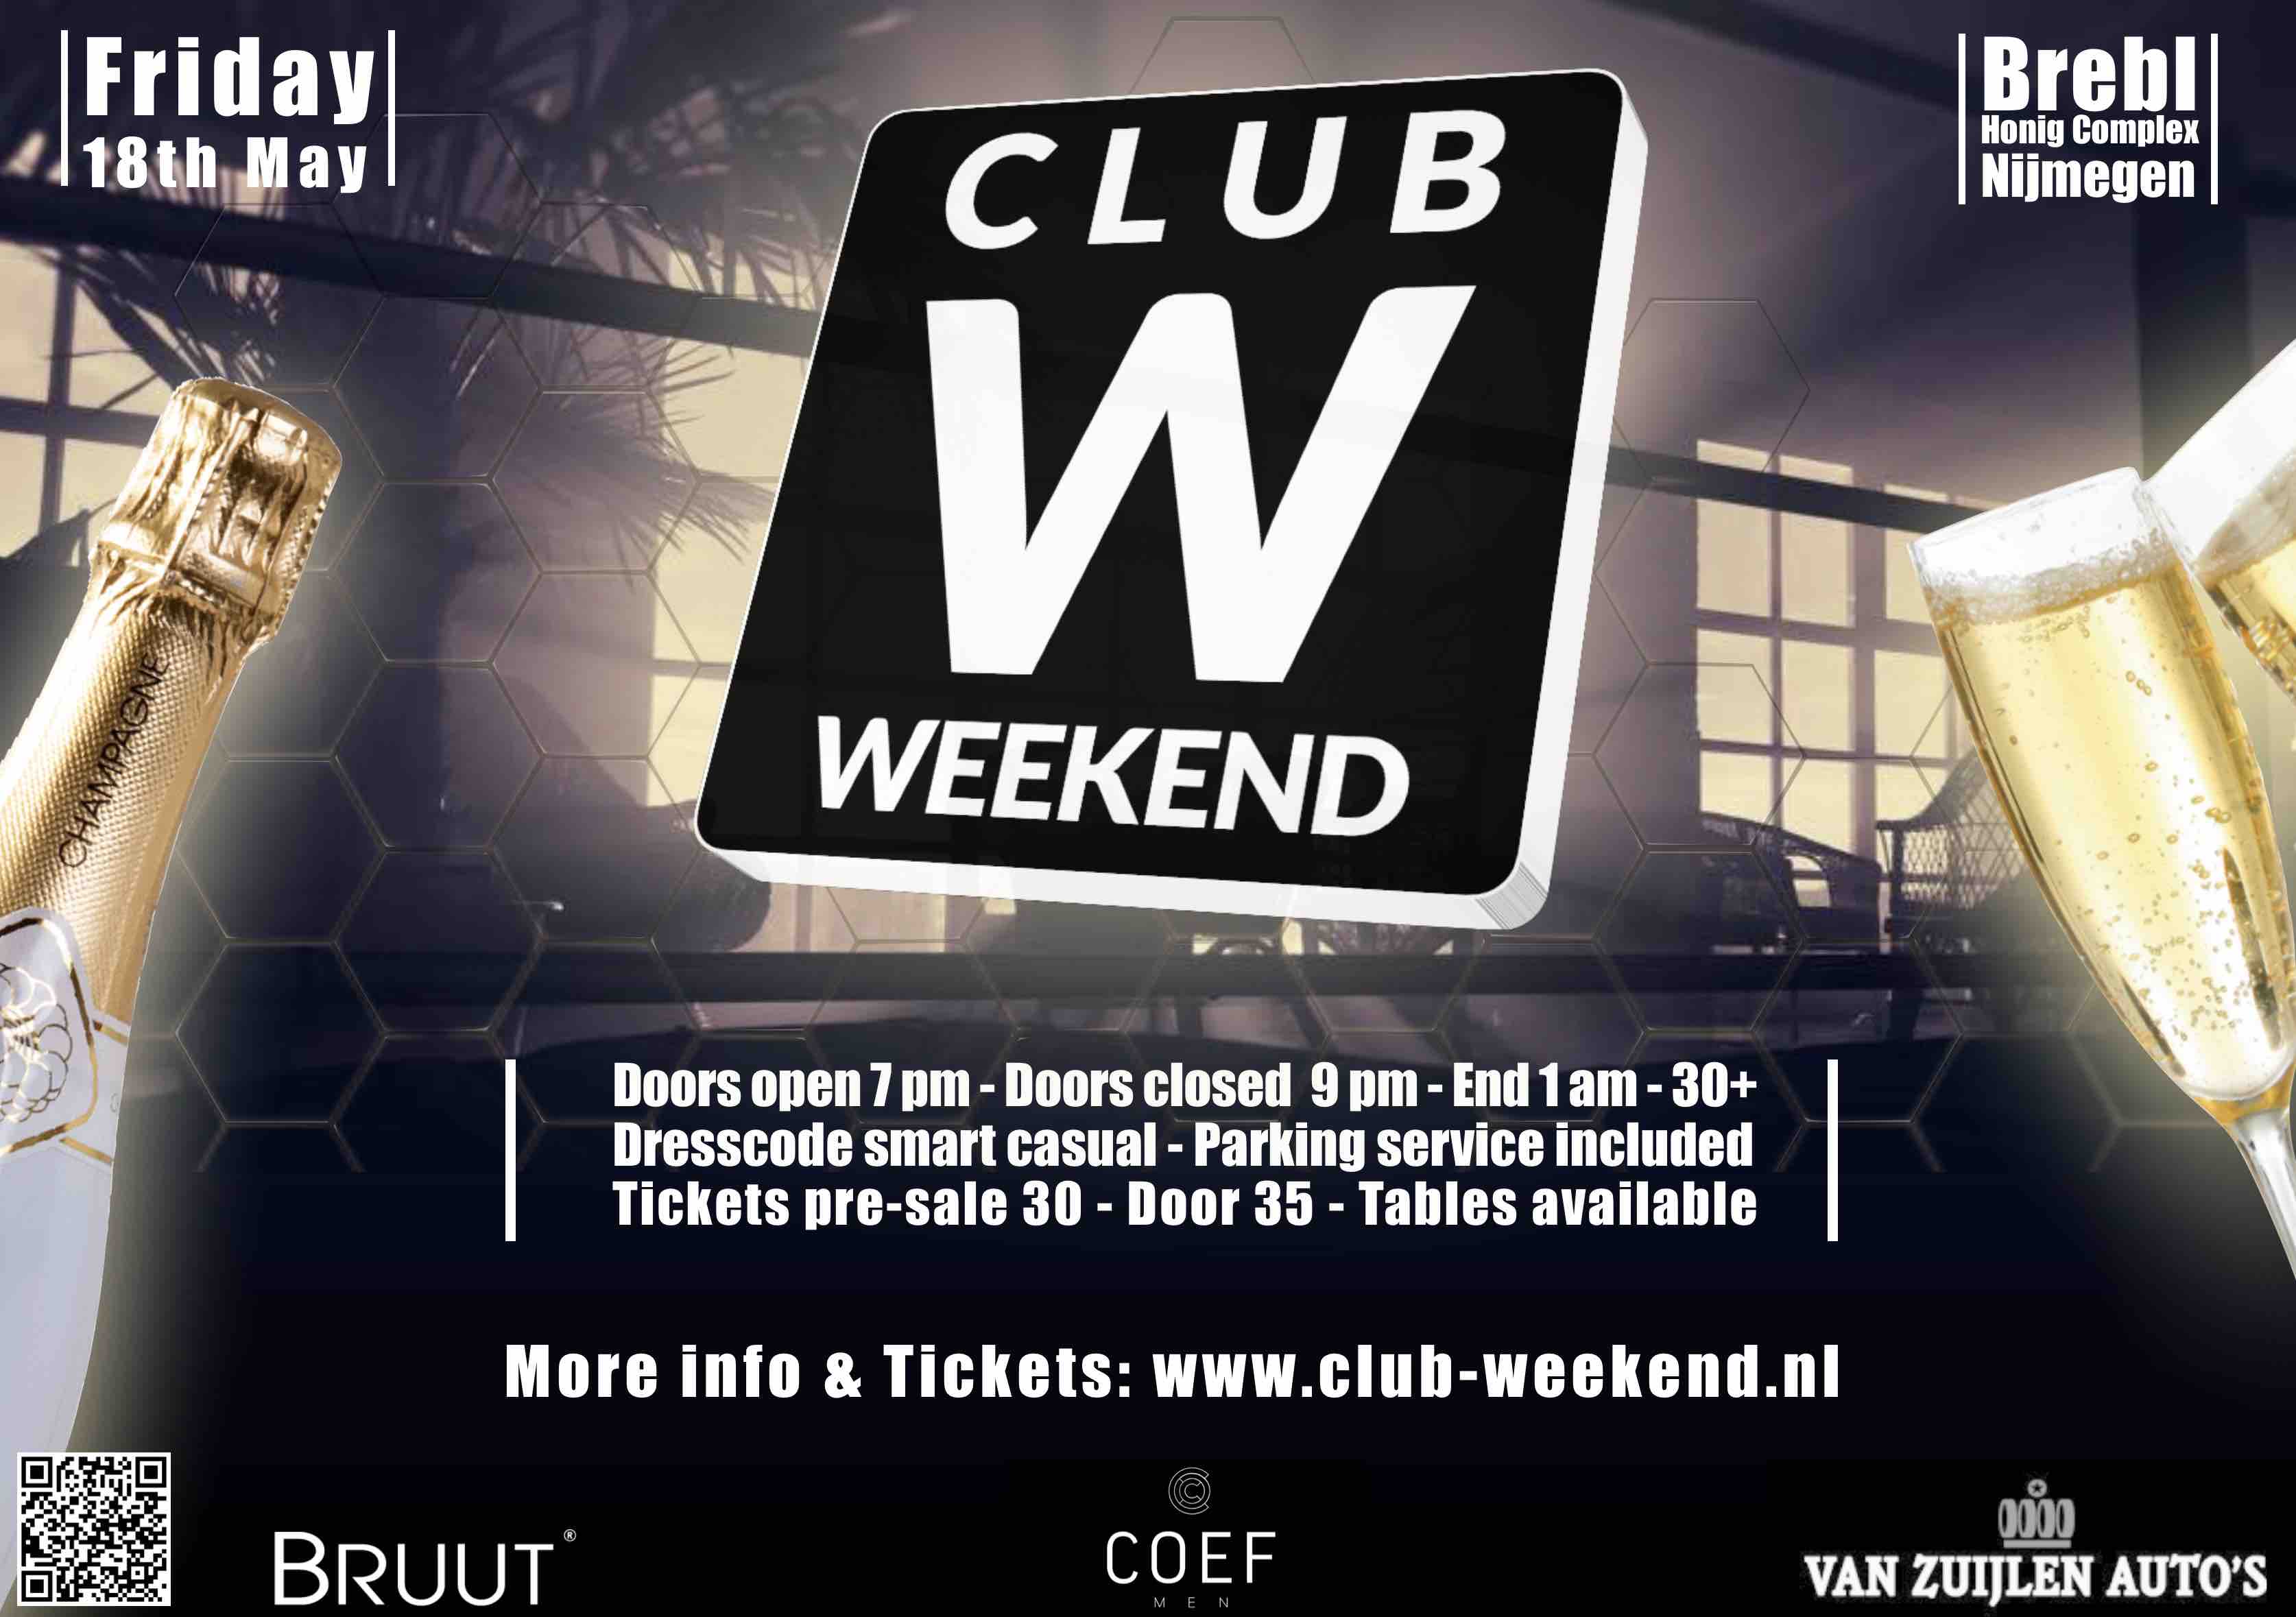 Club Weekend Flyer 18 mei 2018.jpg